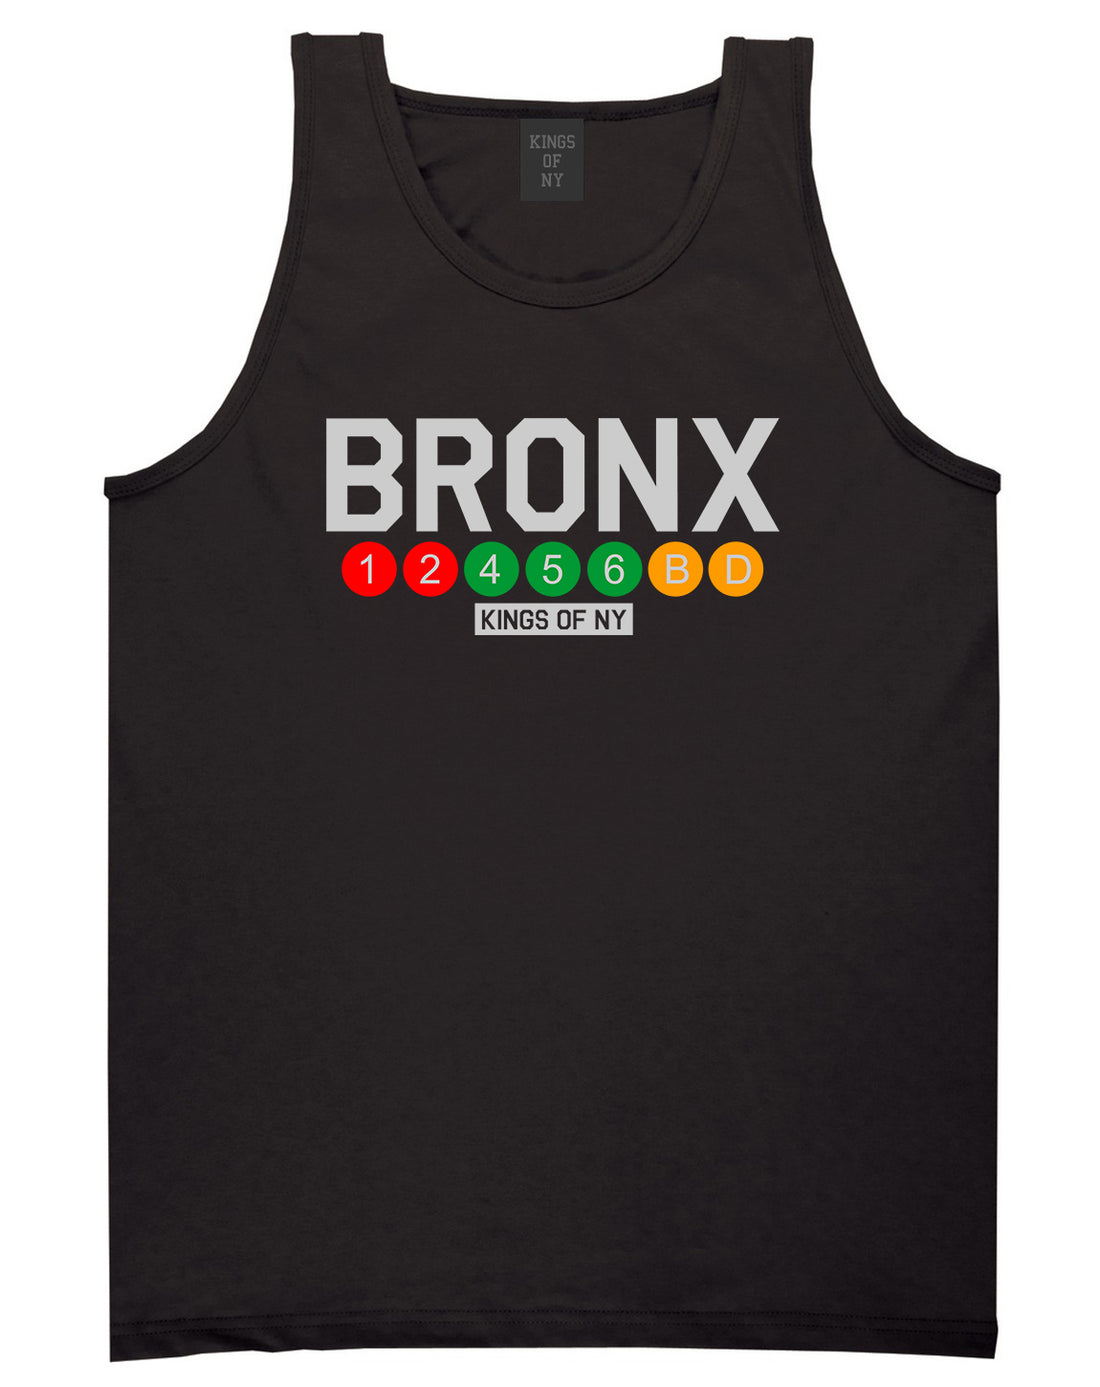 Bronx Transit Logos Tank Top Shirt in Black